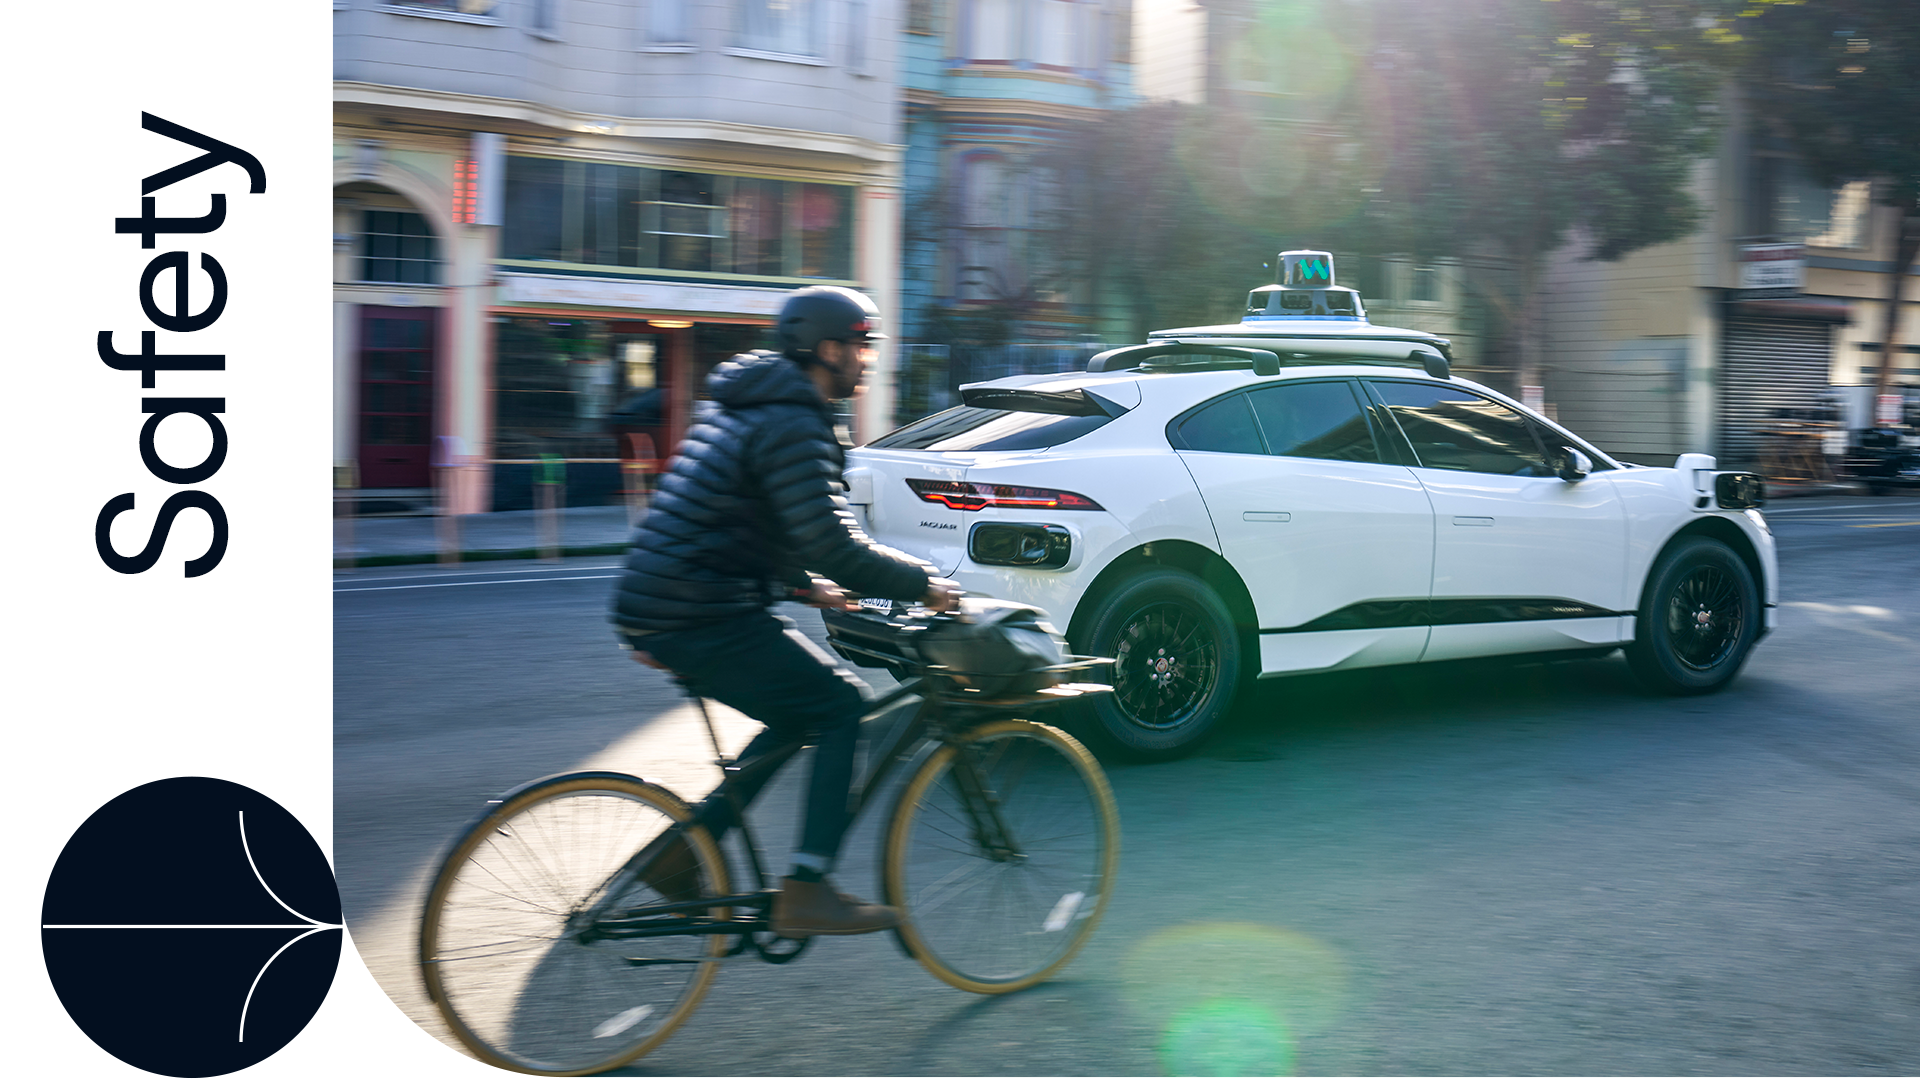 Bicyclist next to a Waymo car